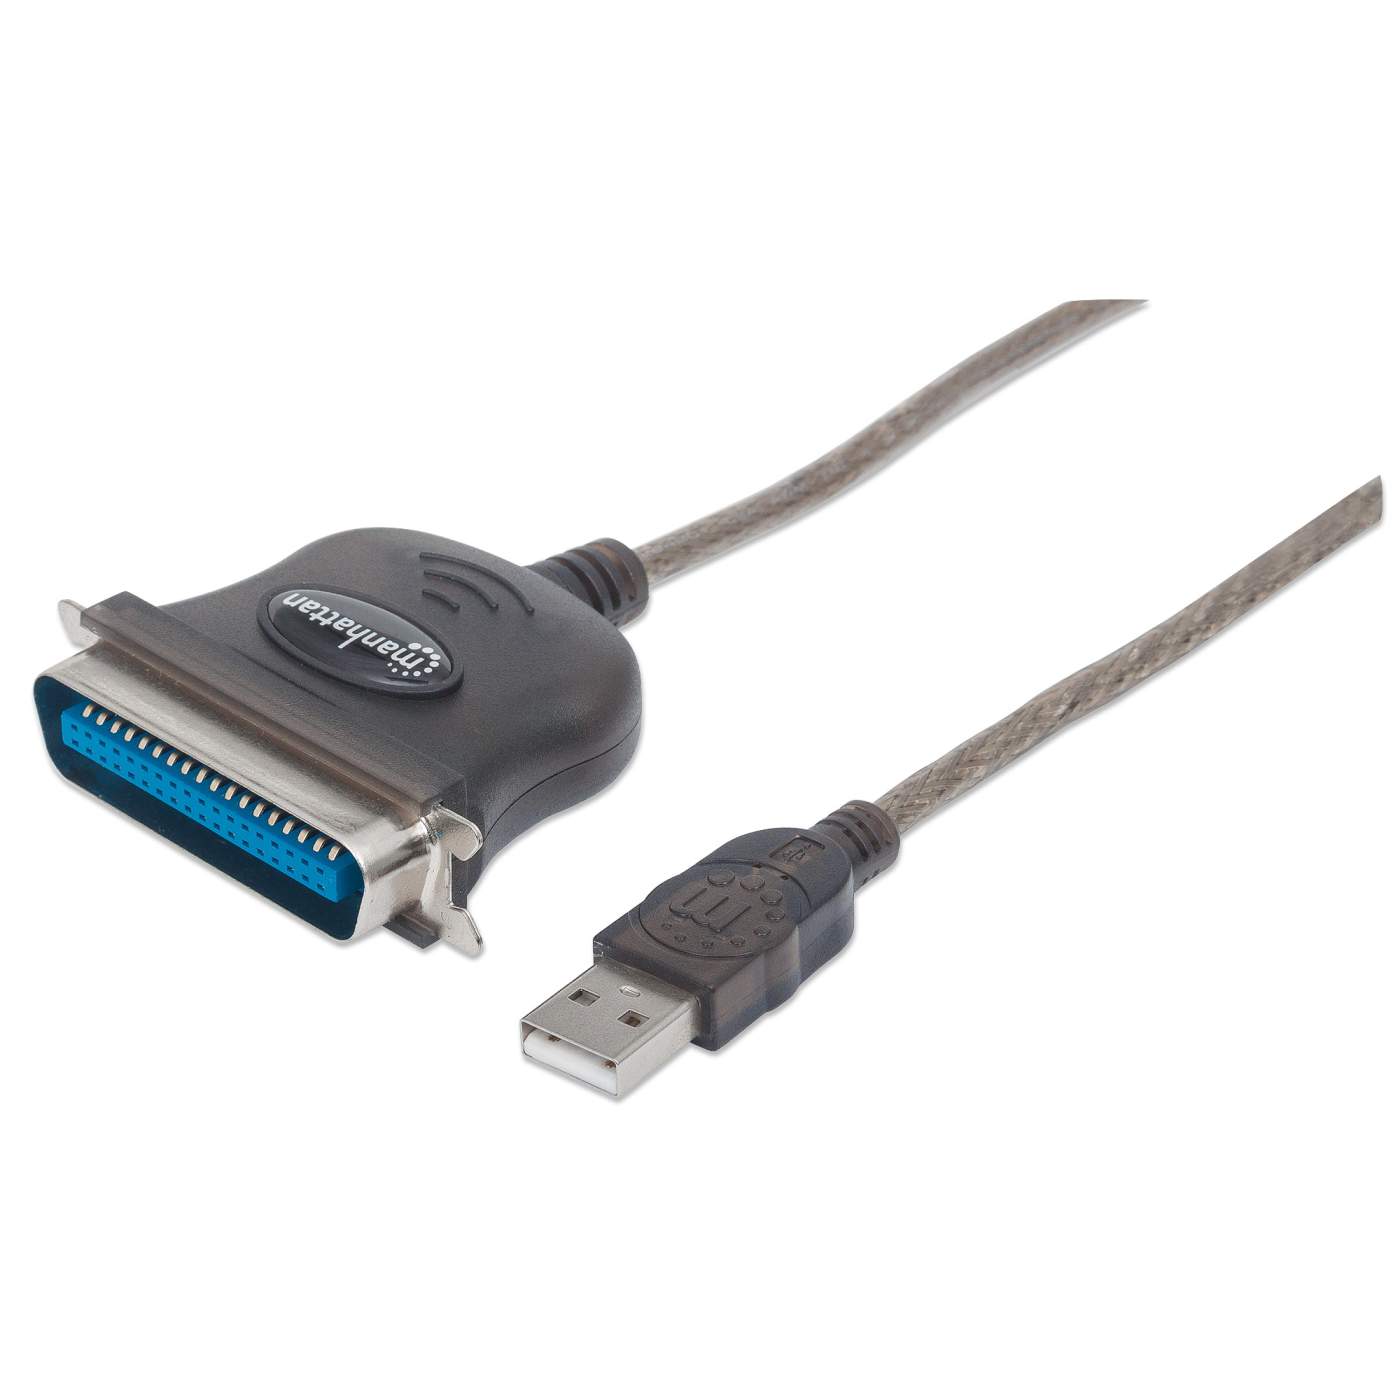 Full-Speed USB to Cen36 Parallel Printer Converter Image 1